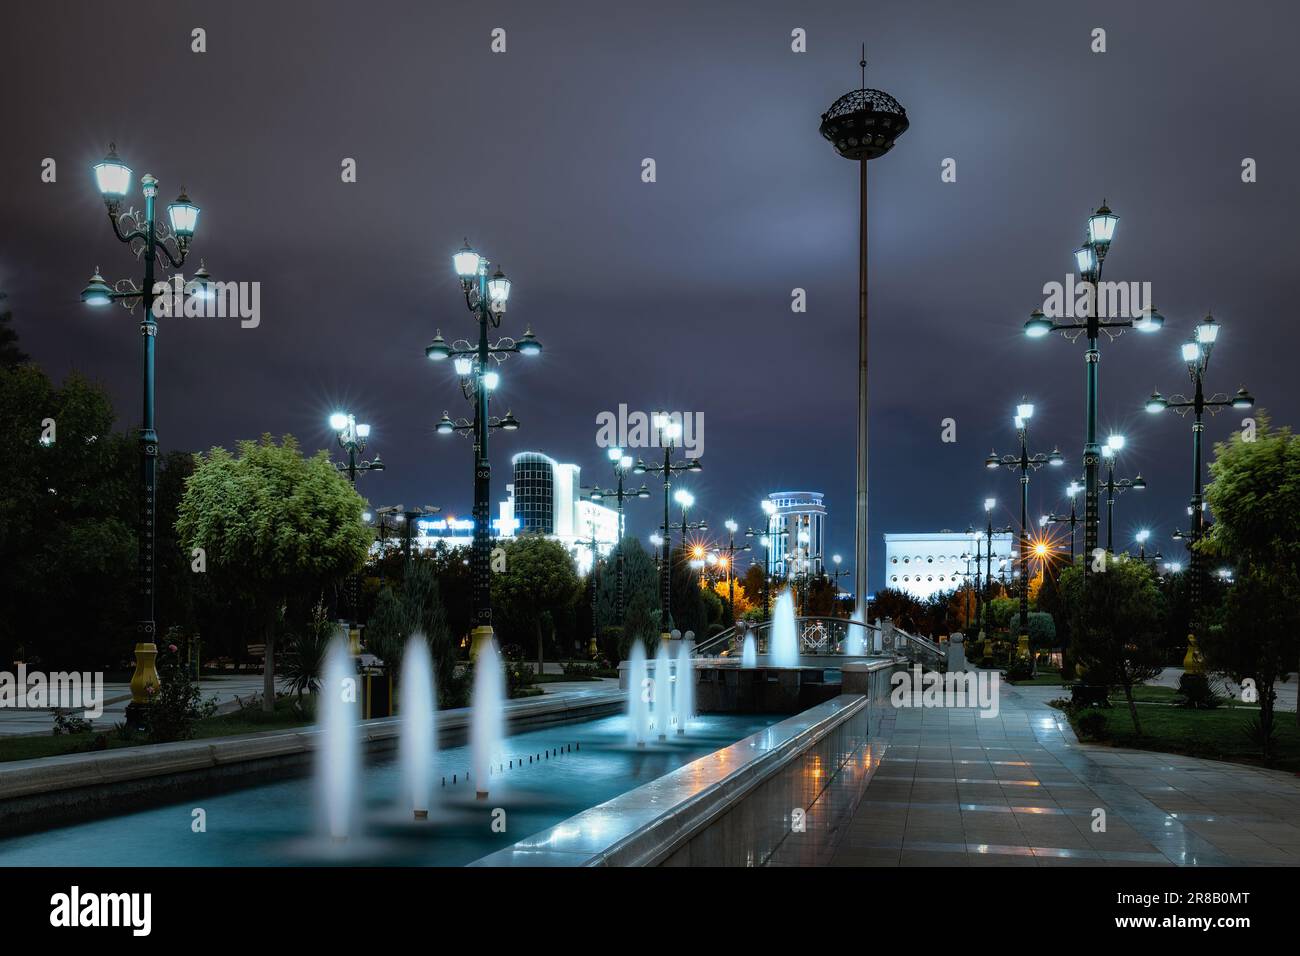 Parc public de la place inspiration la nuit, Achgabat. Banque D'Images